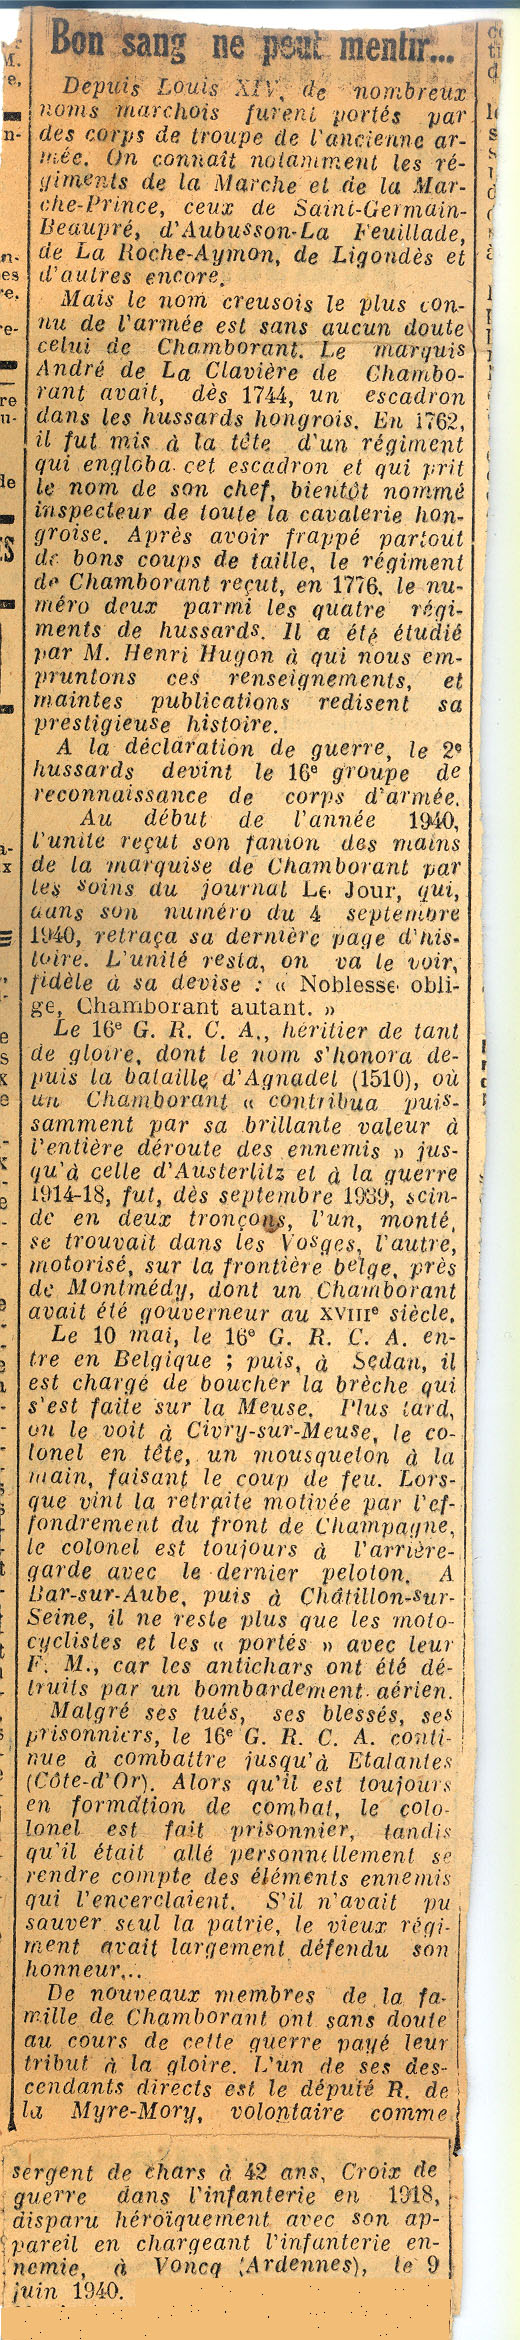 courrier_du_centre_19_nov_1940.jpg